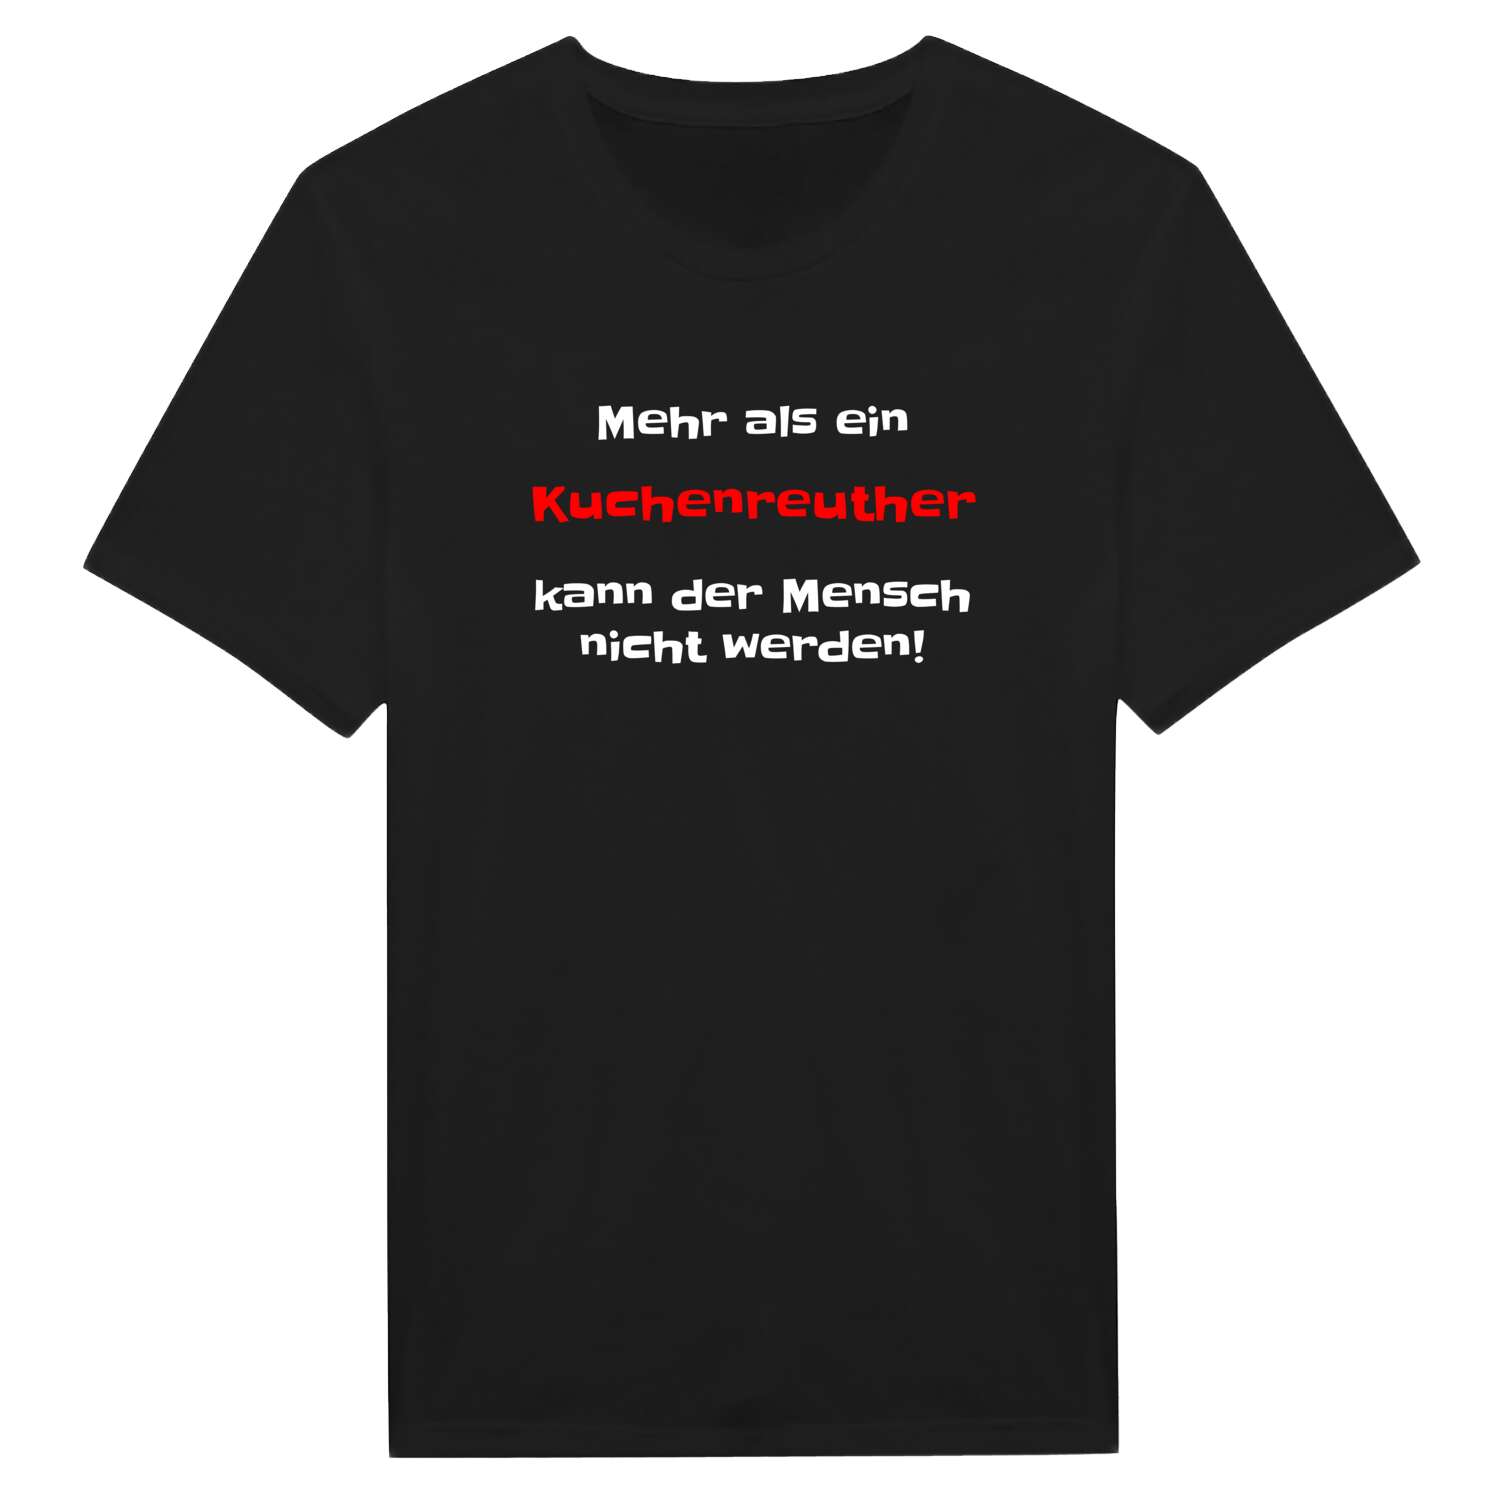 Kuchenreuth T-Shirt »Mehr als ein«